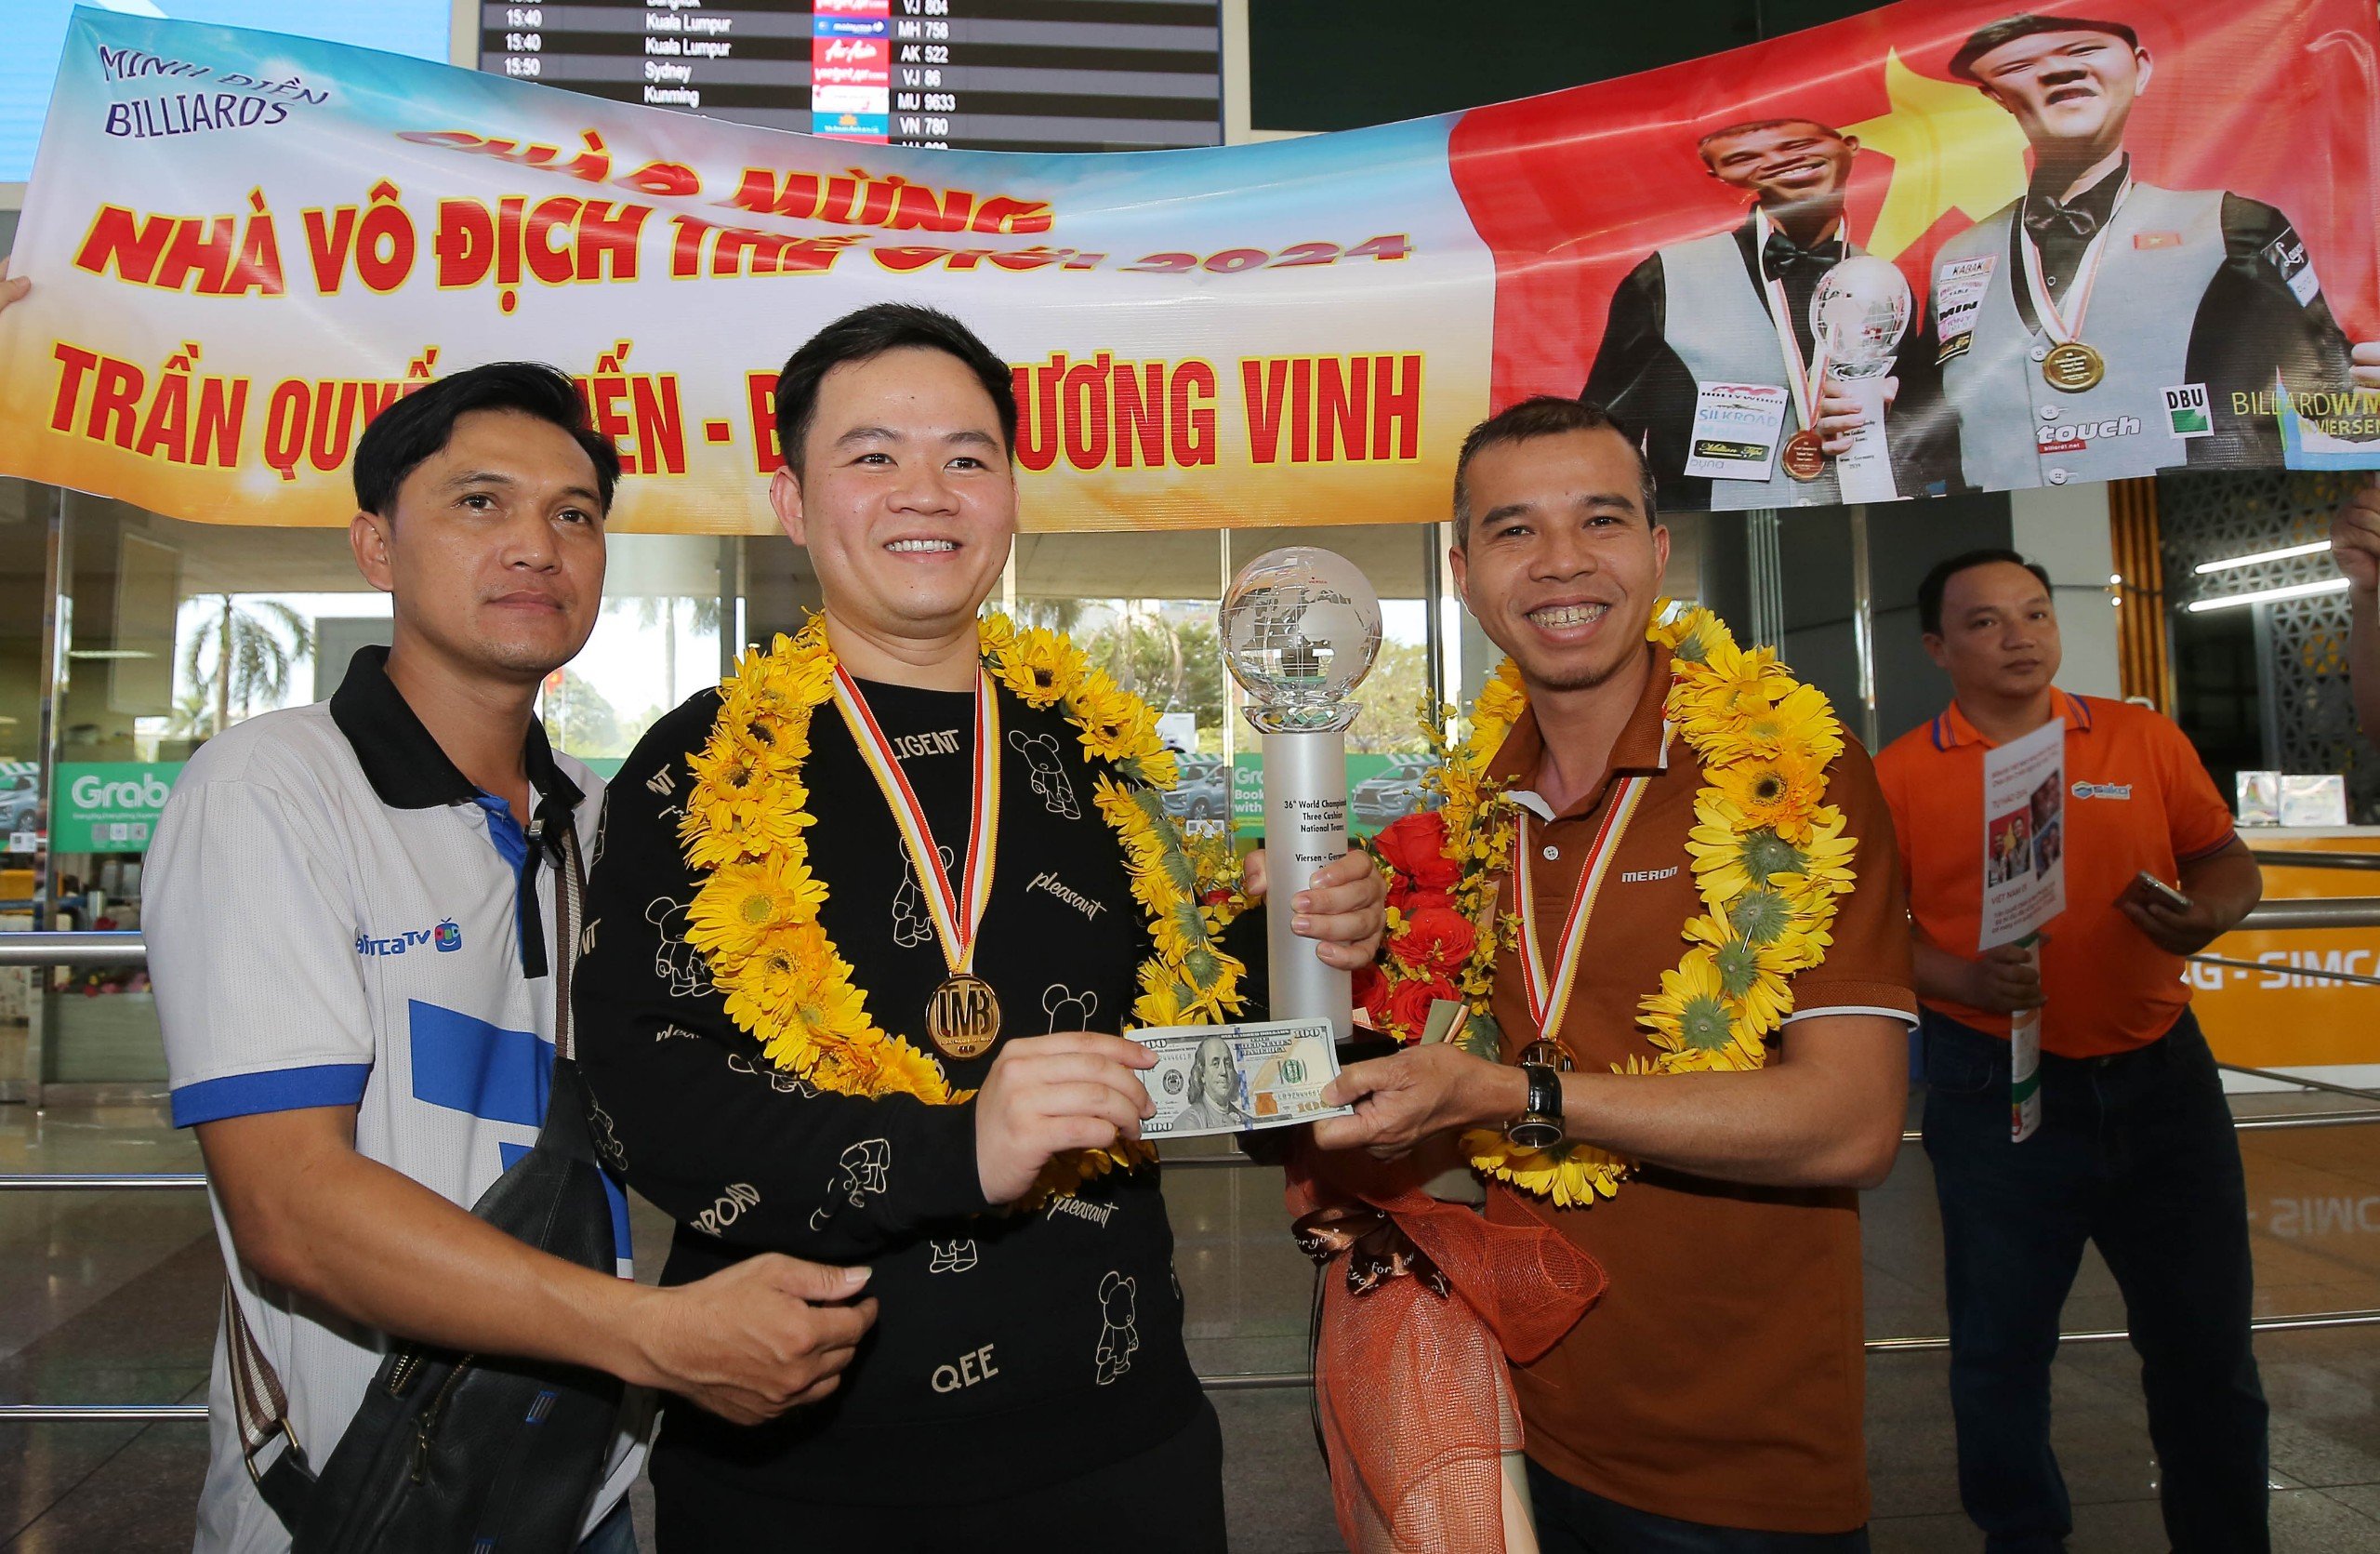 Hai nhà vô địch thế giới Trần Quyết Chiến và Bao Phương Vinh được chào đón rất nồng nhiệt- Ảnh 12.